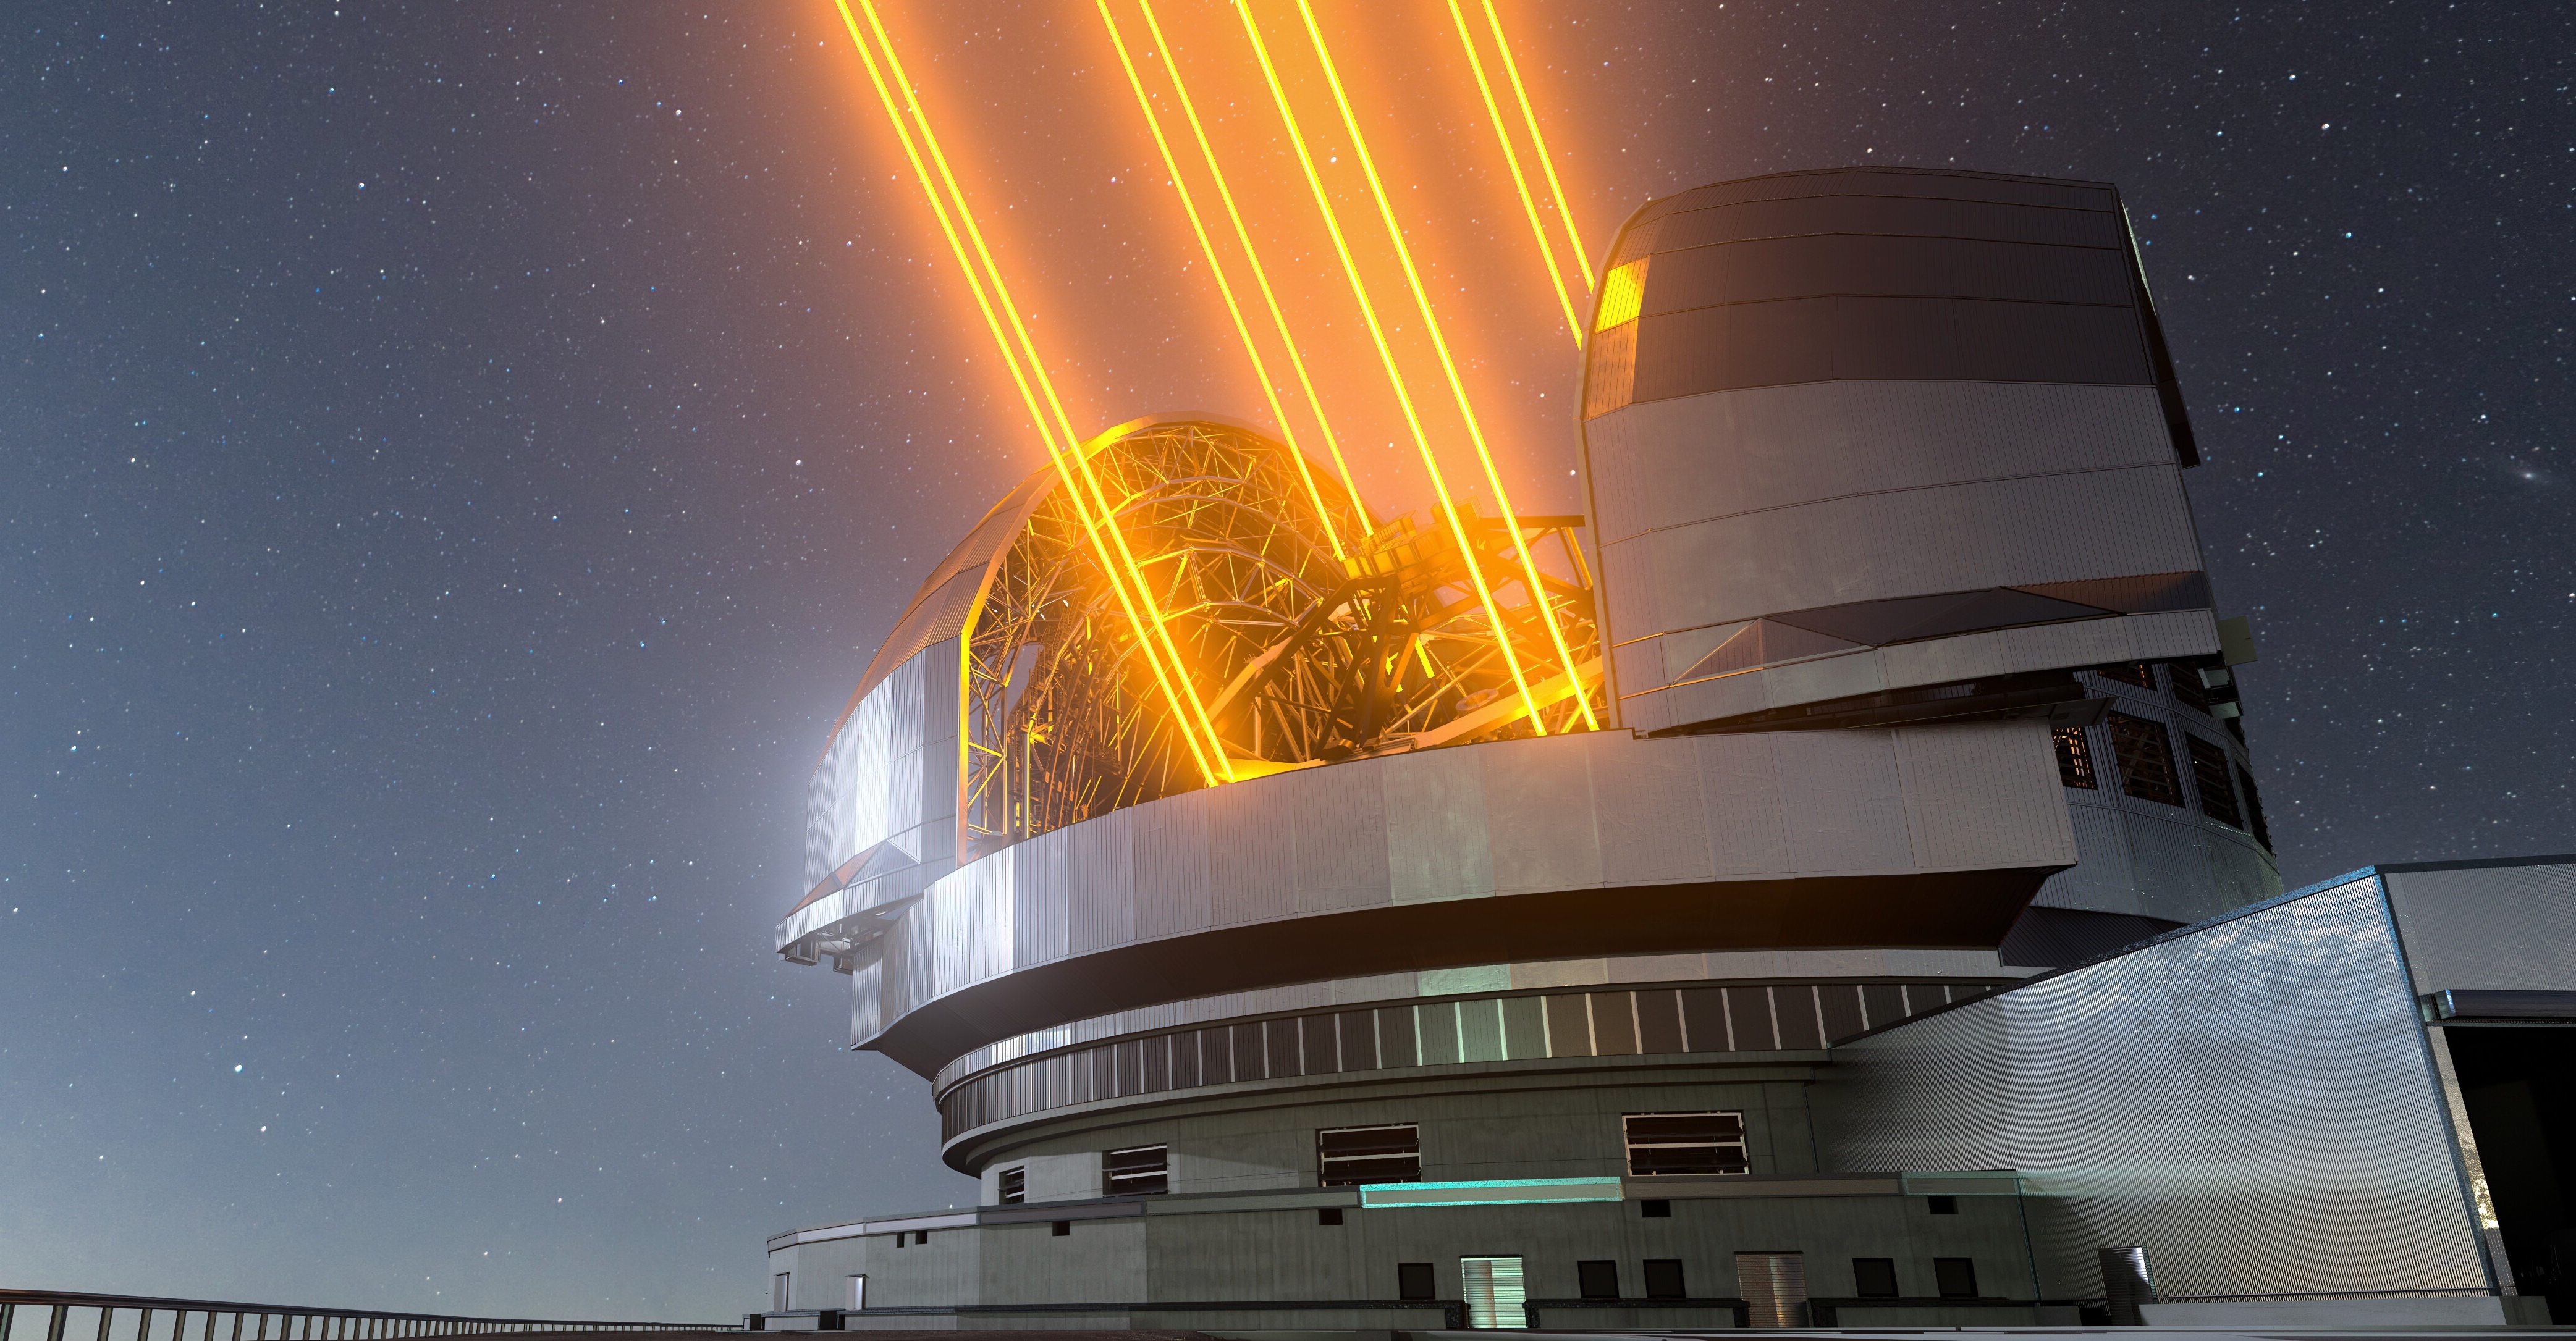 L'ELT, le télescope géant de l'ESO sera opérationnel fin 2028. Avec cet observatoire, les astronomes s'attendent à des avancées considérables dans de nombreux domaine de l'astronomie. © ESO